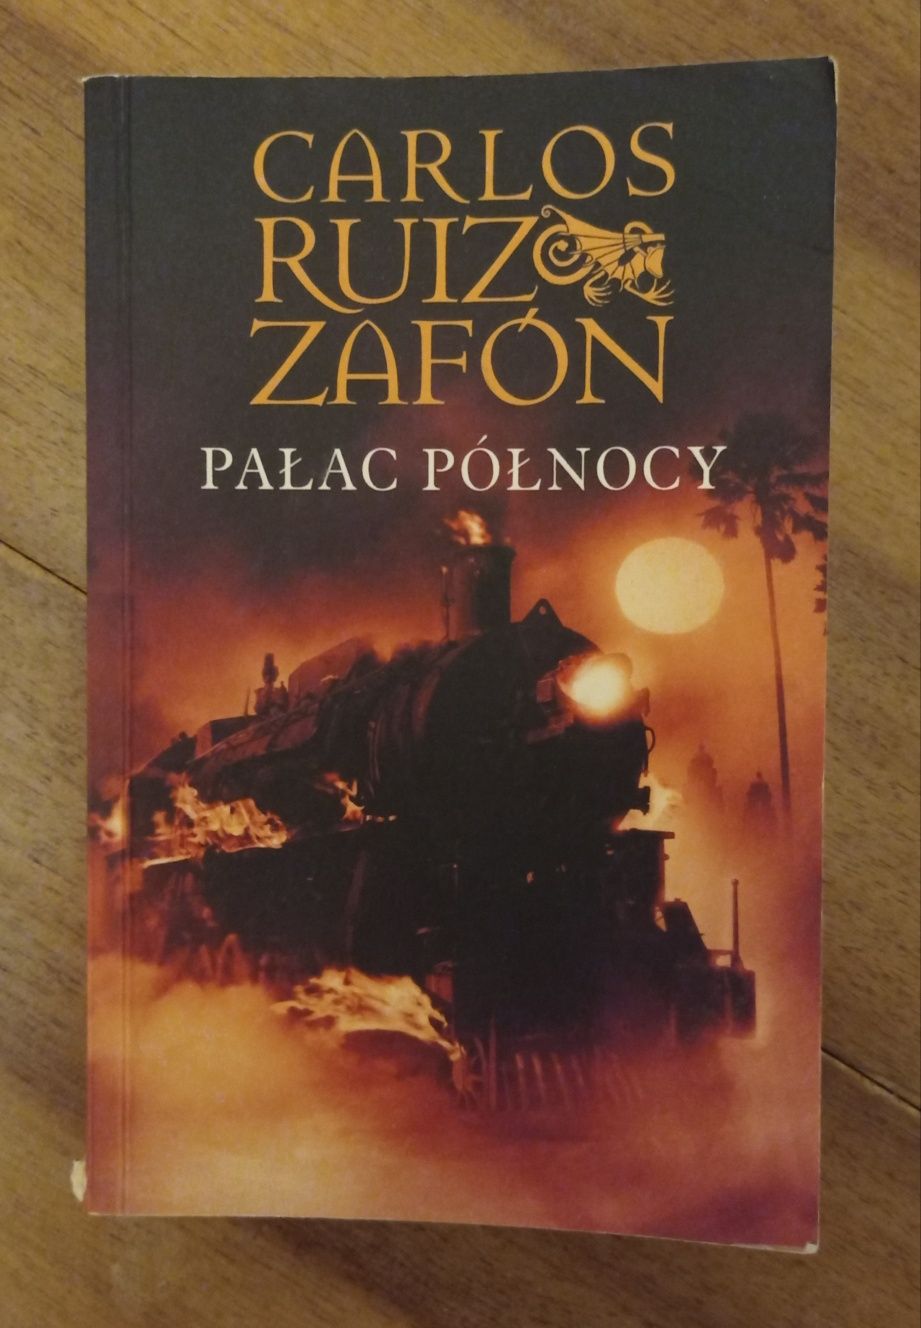 Książka "Pałac północy" Carlos Ruiz Zafon